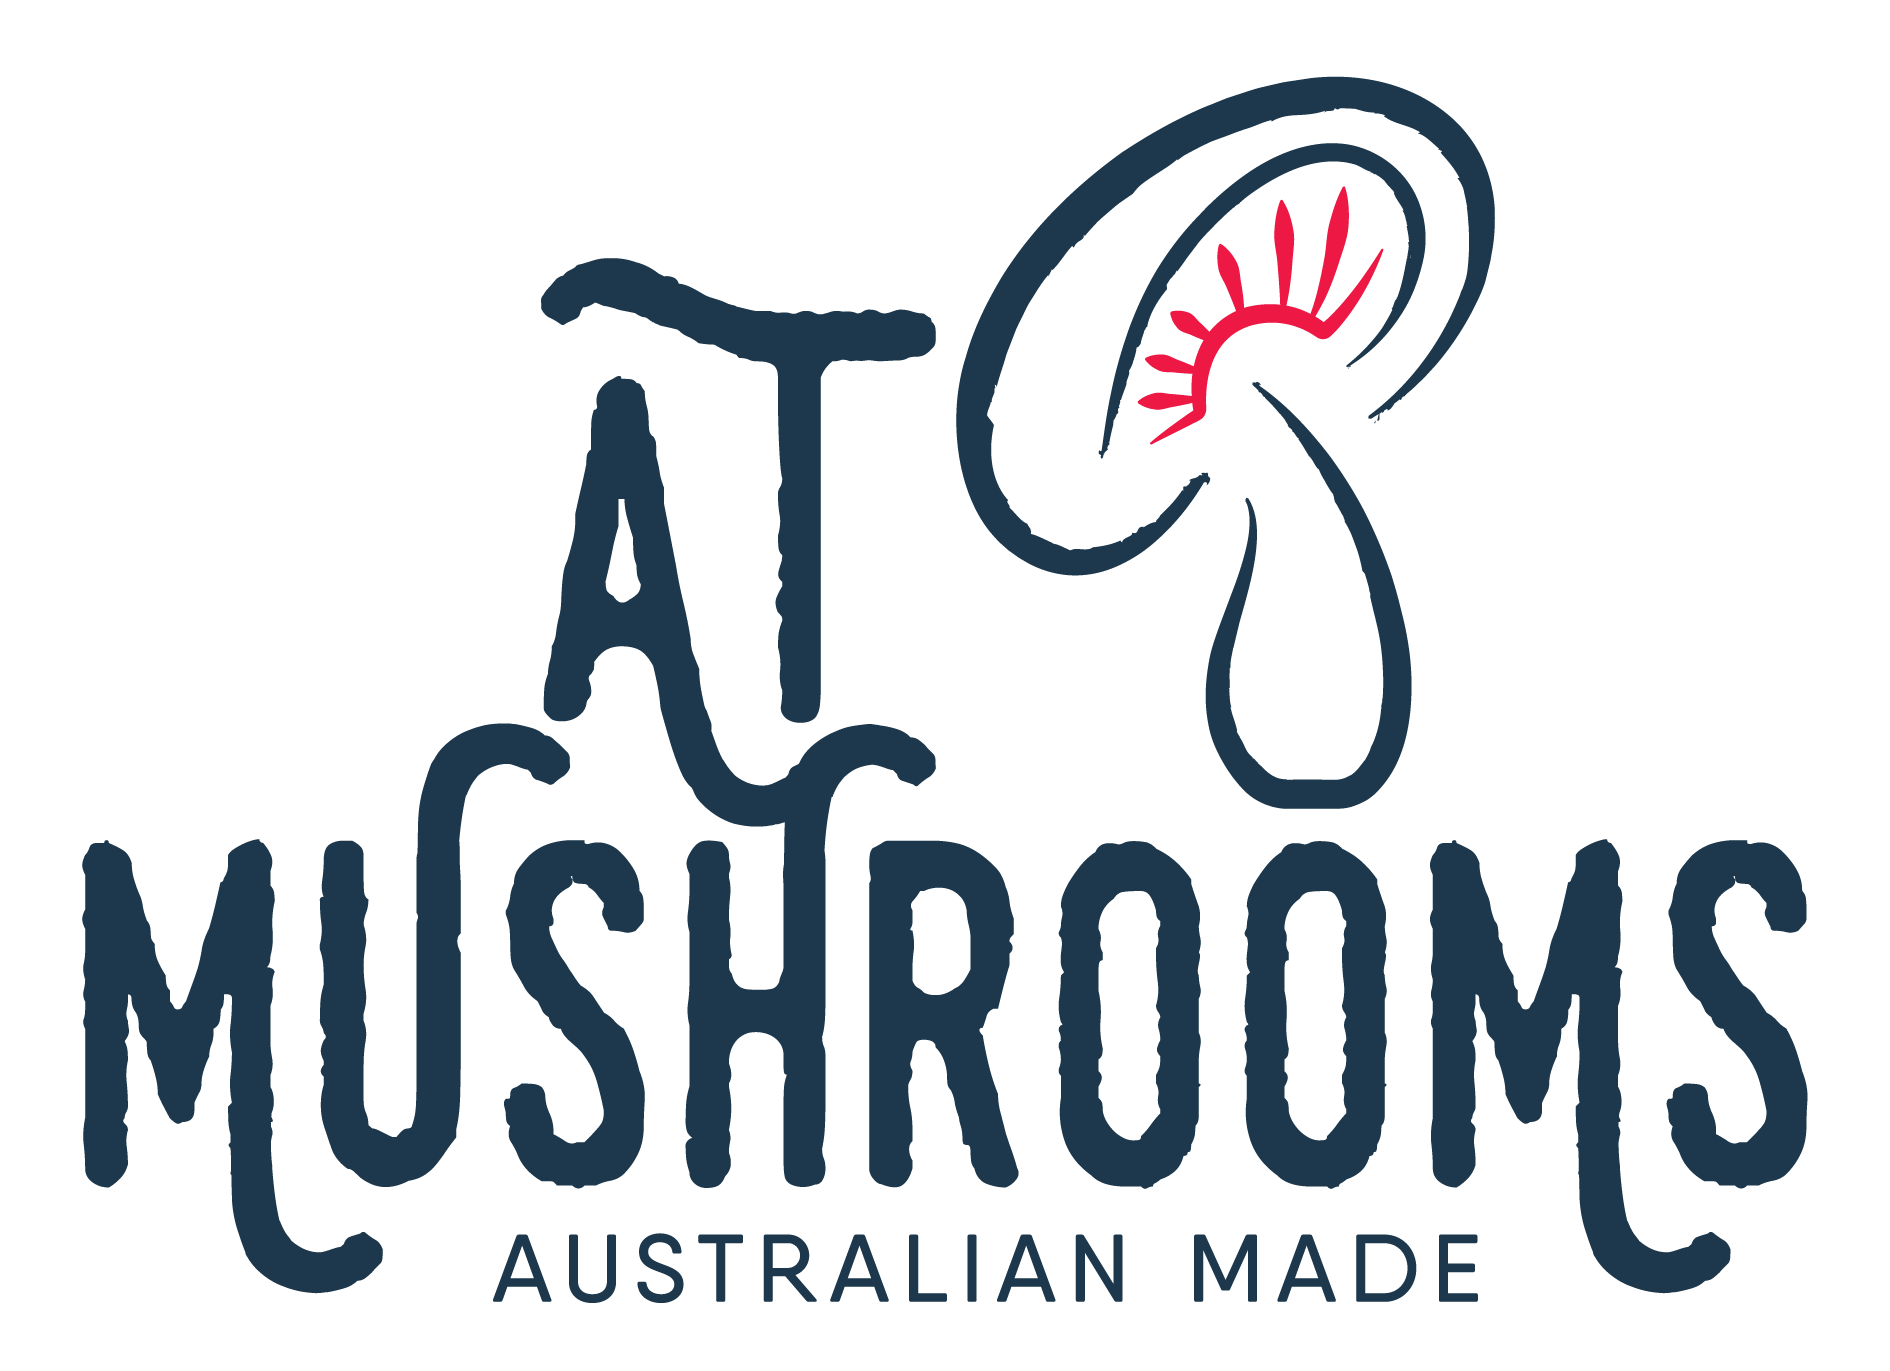 AT Mushrooms Australian Made Lions Mane Logo, Mushroom Gills Red